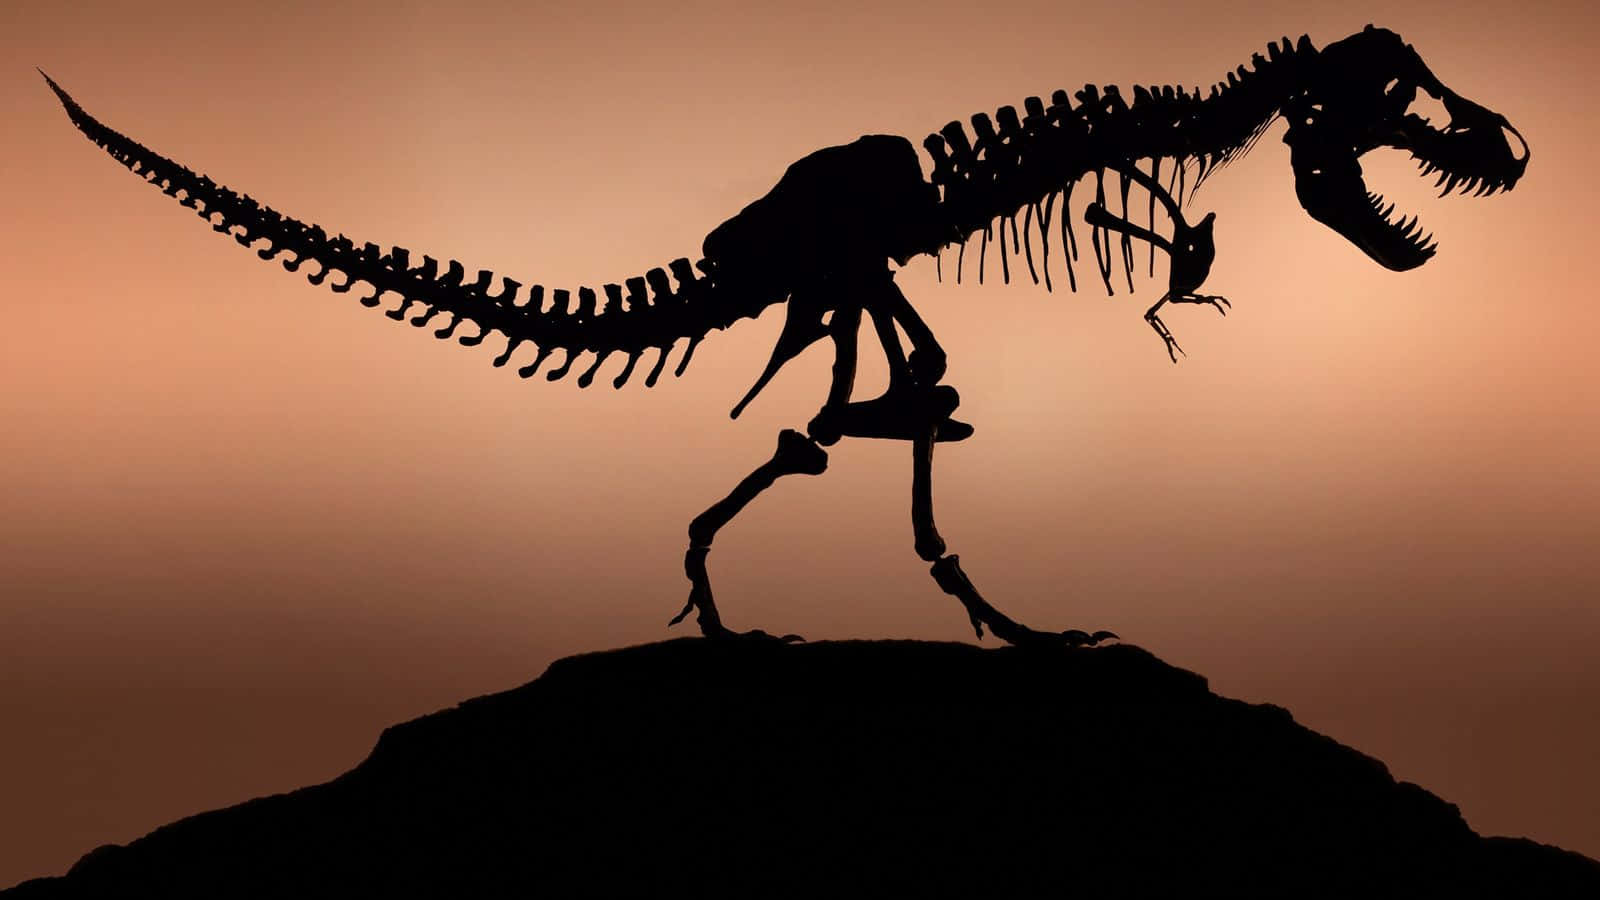 Ent-rex-skelett Är Silhuetterat På En Sten.